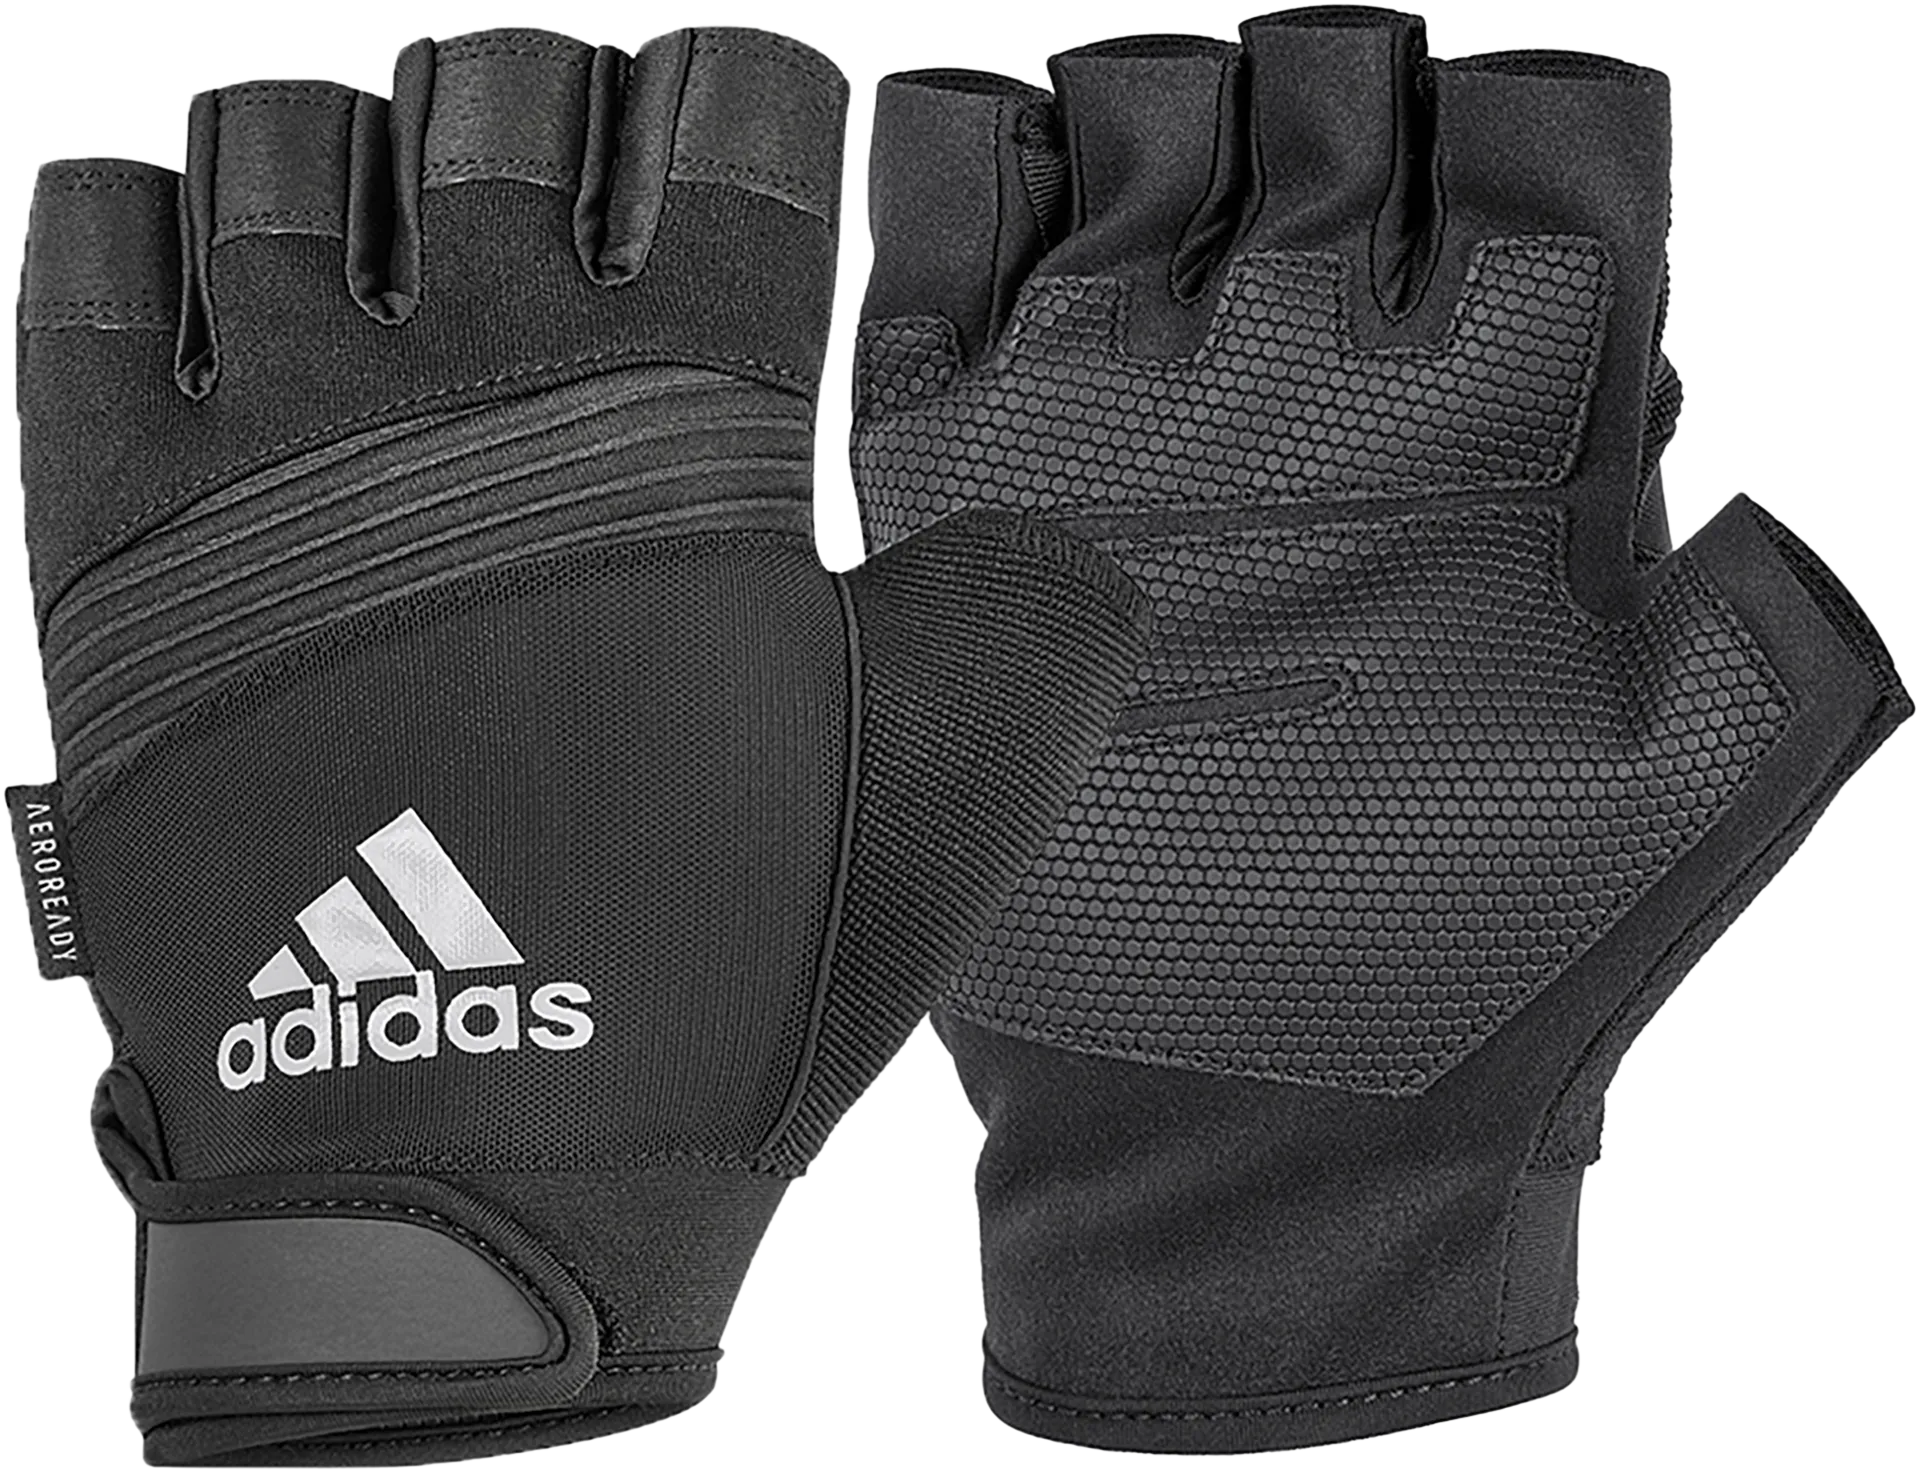 Adidas Gloves Performance - Grey/XL - 1